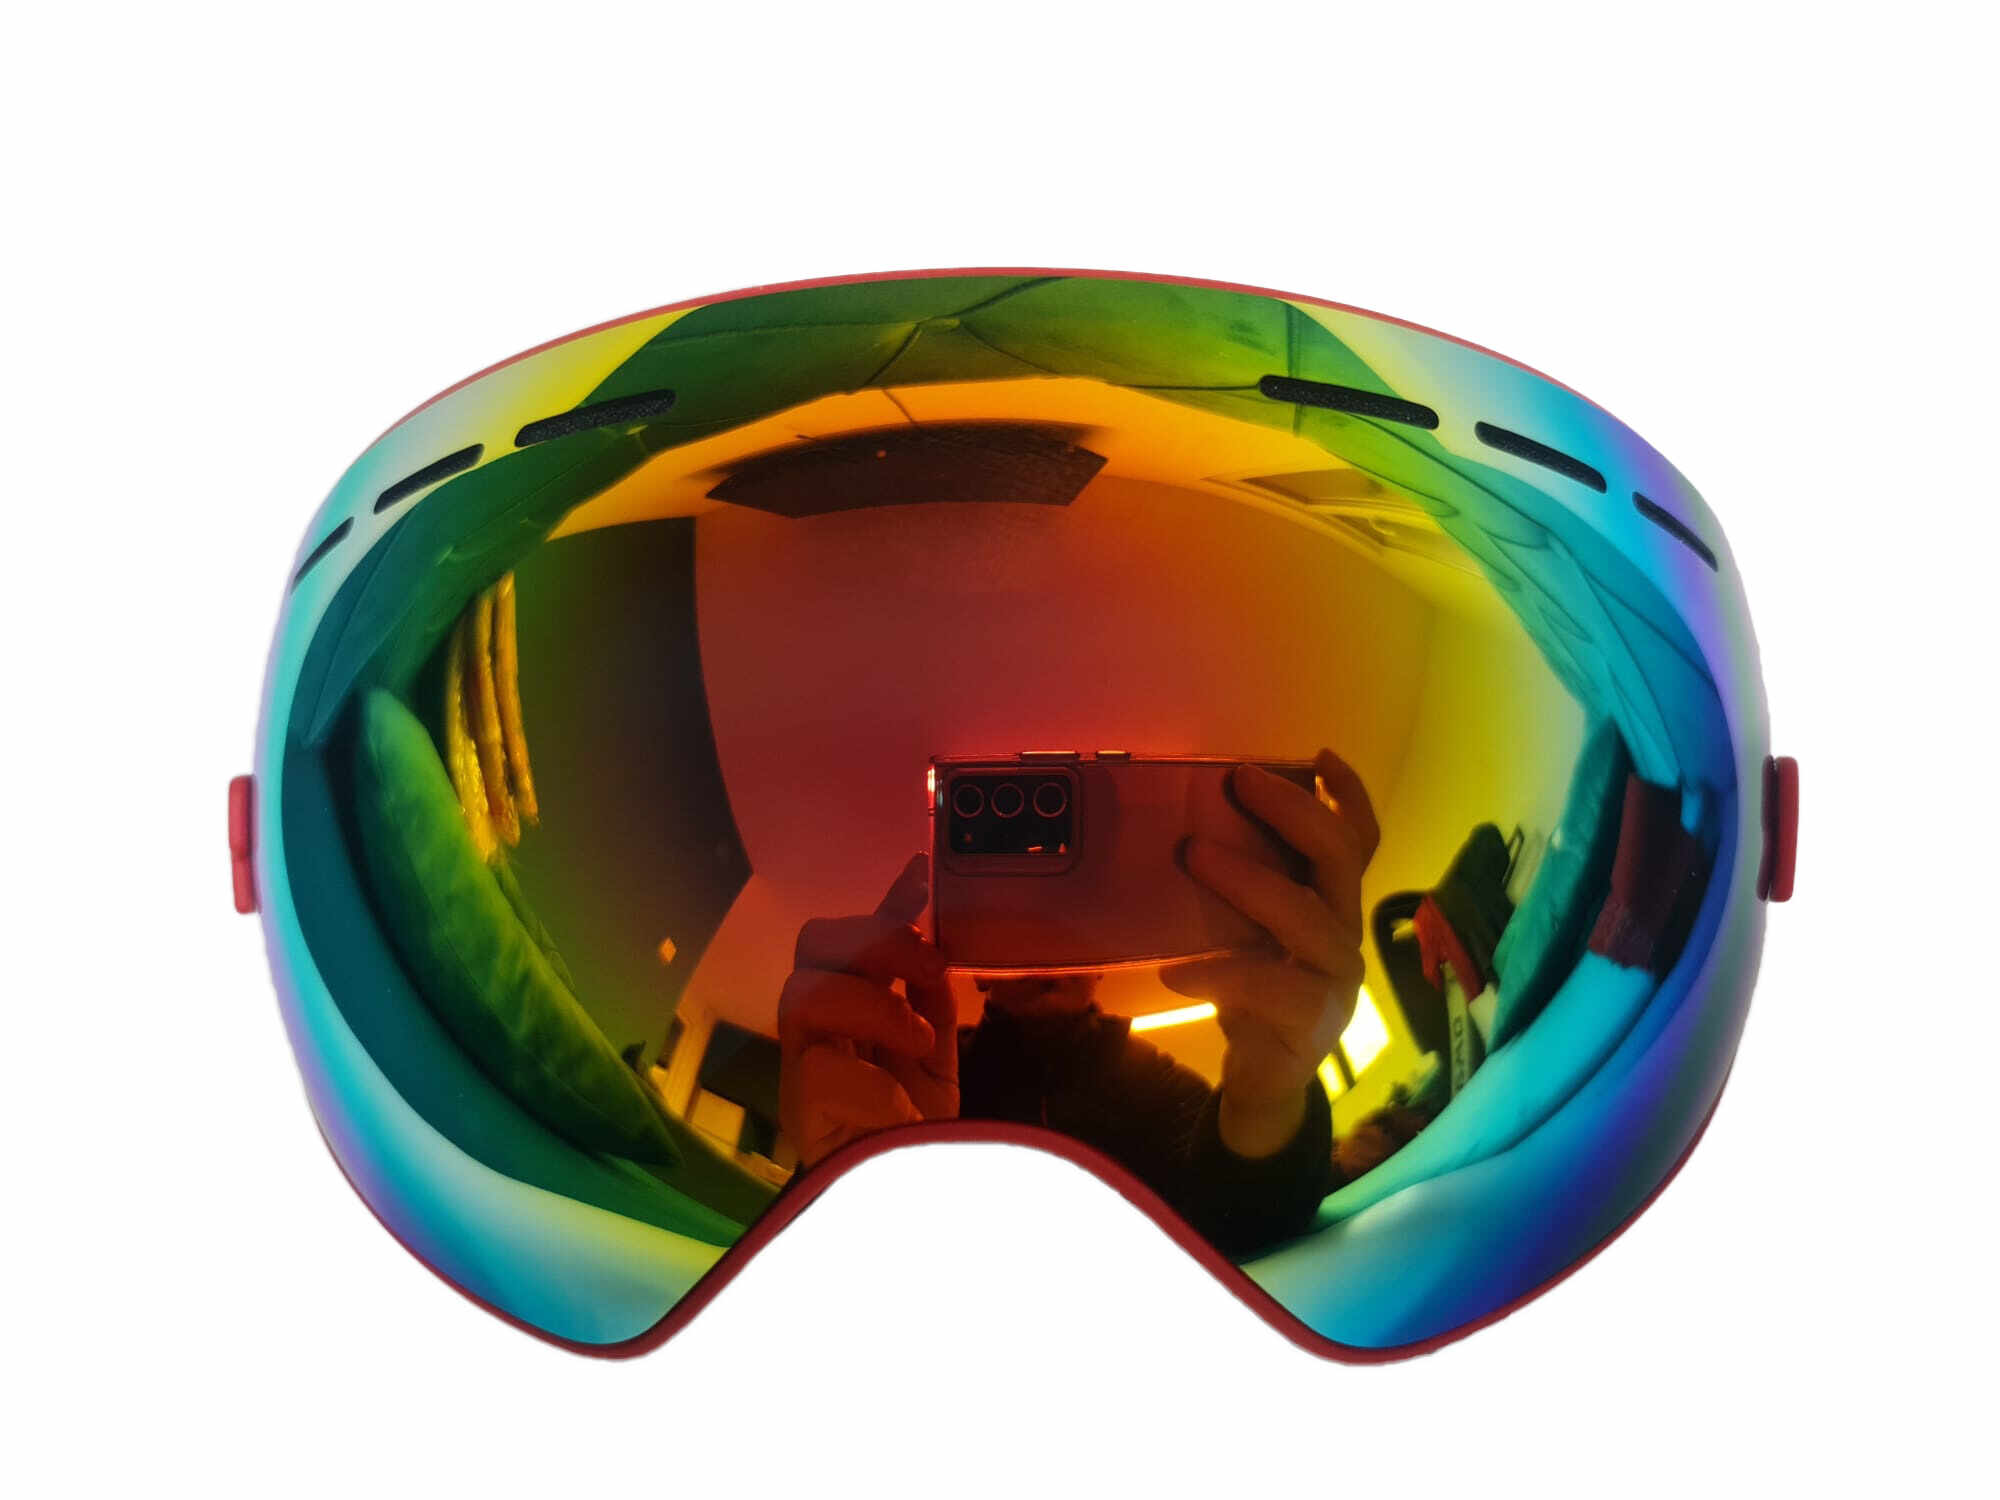 Ochelari ski si snowboard, lentila sferica dubla, demontabila, polarizata, ventilate anti-ceata, oglinda, rosu